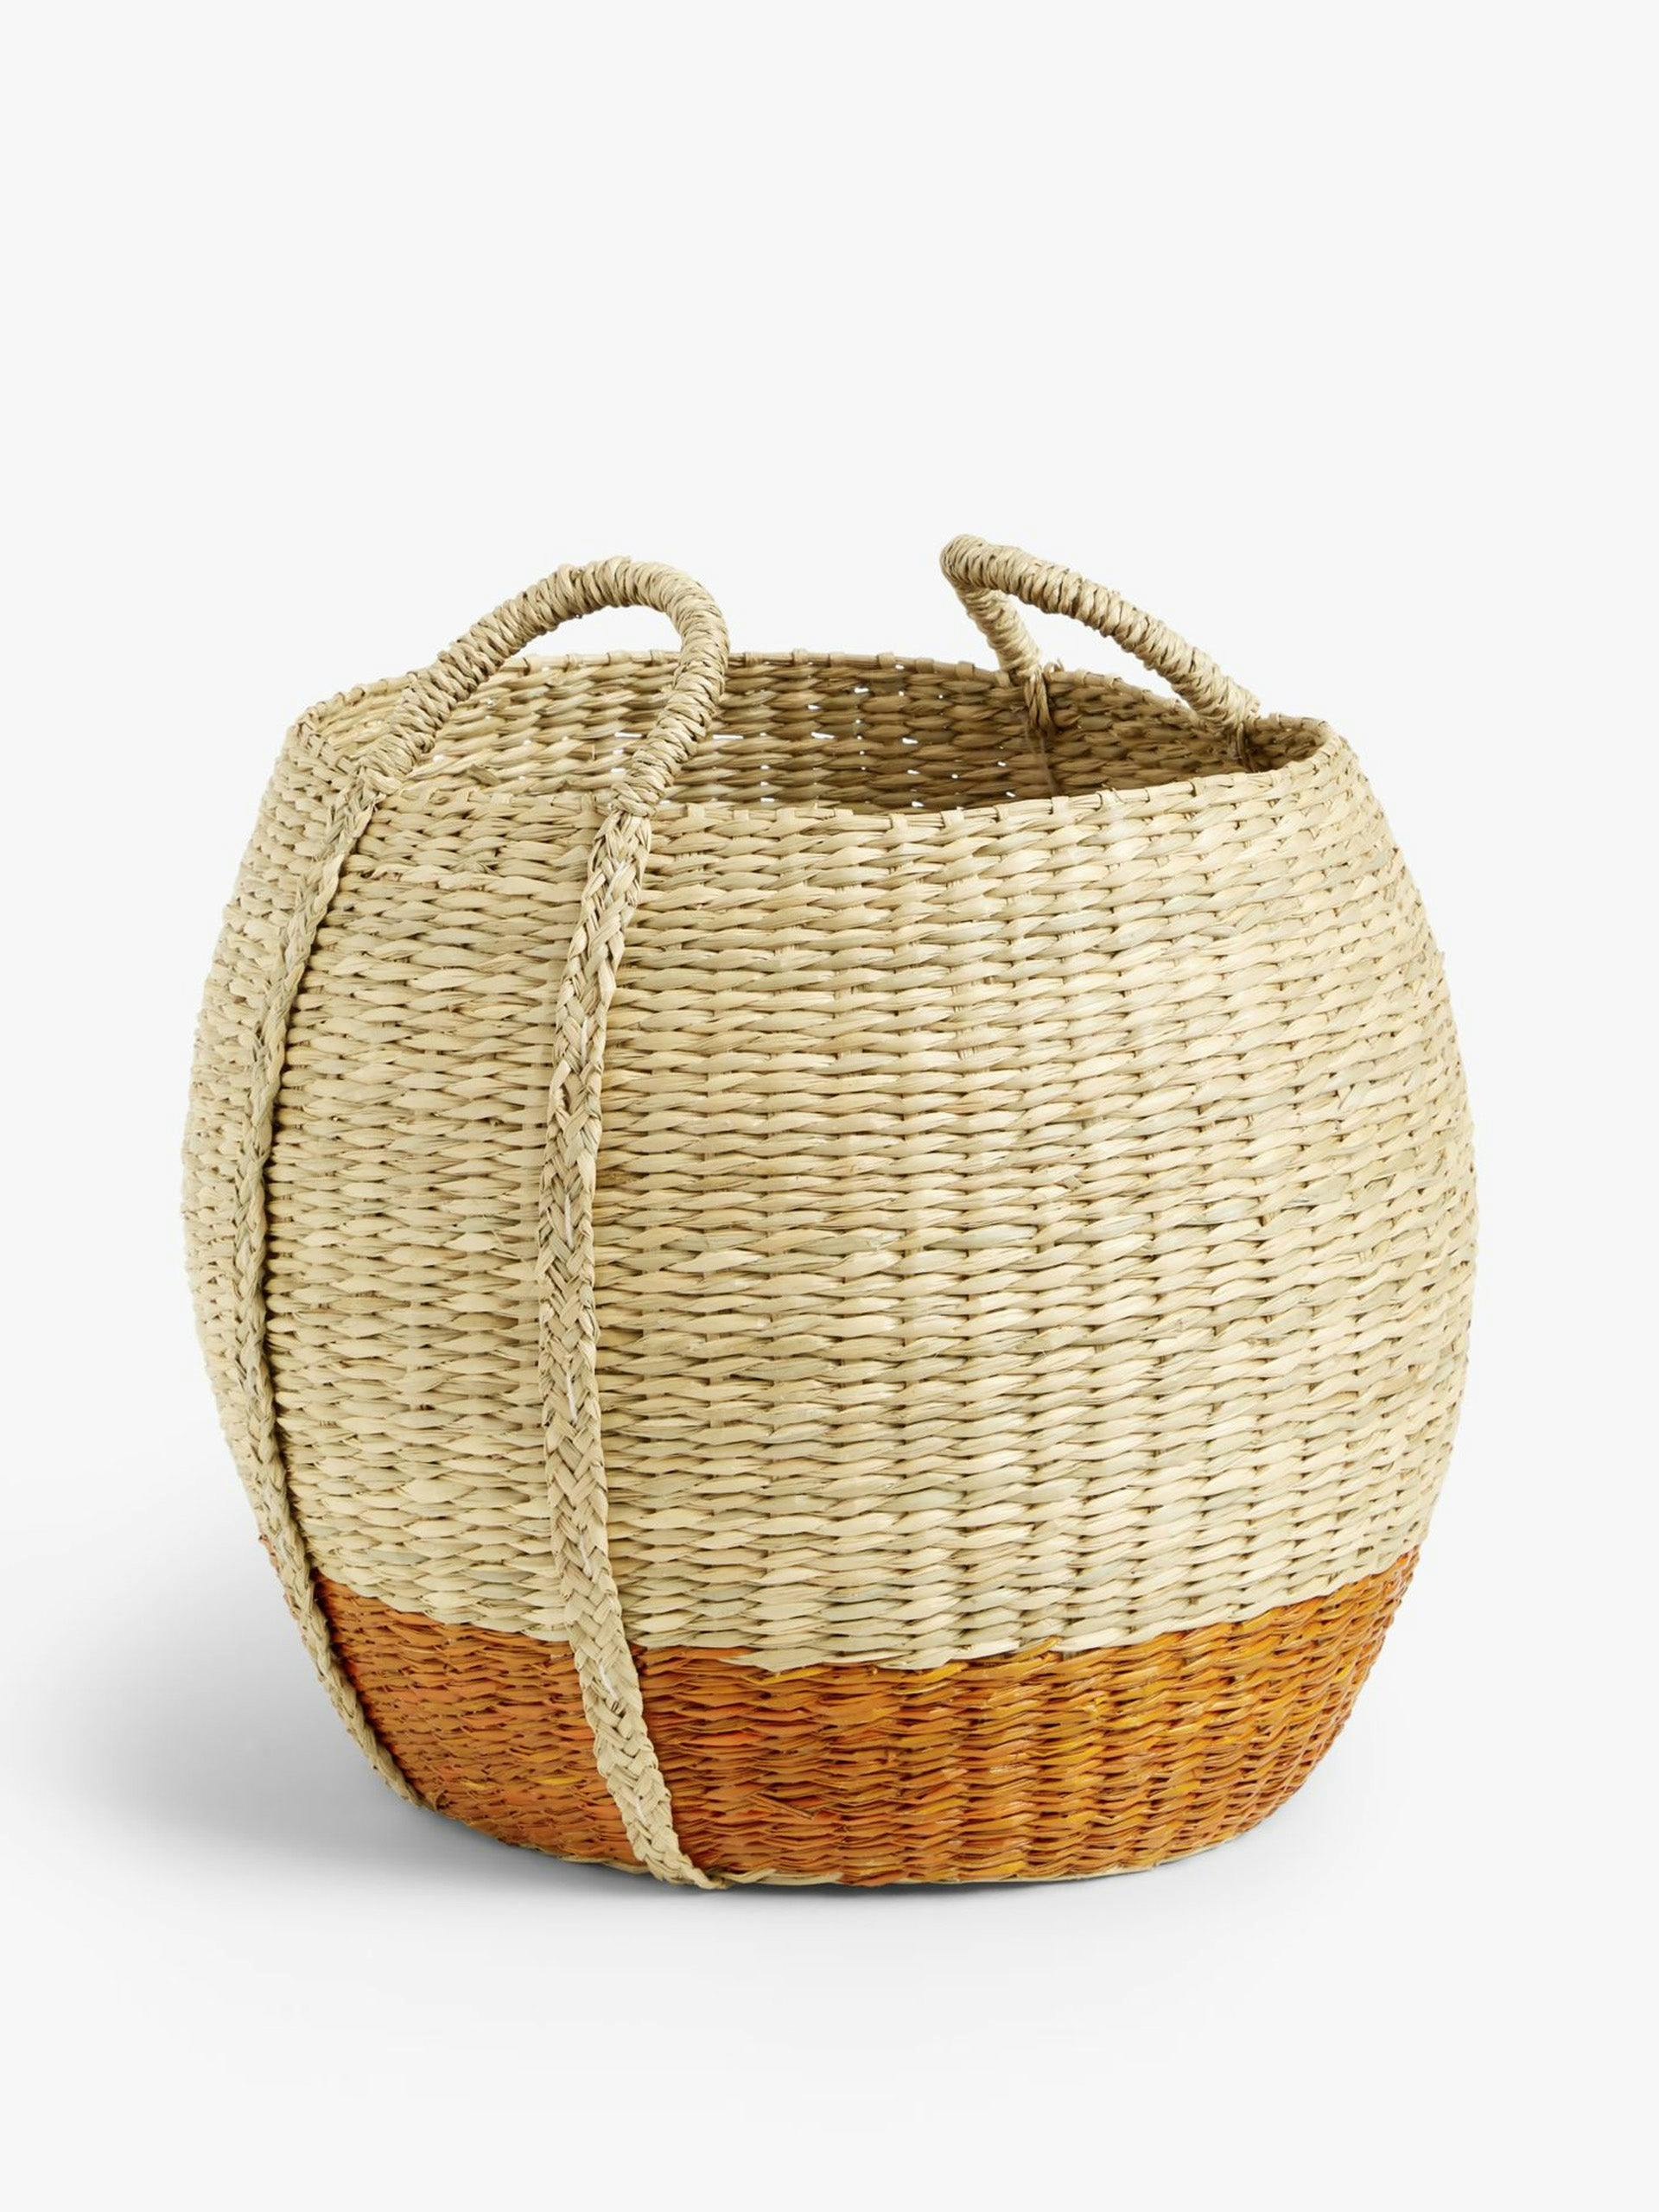 Slouchy seagrass round storage basket